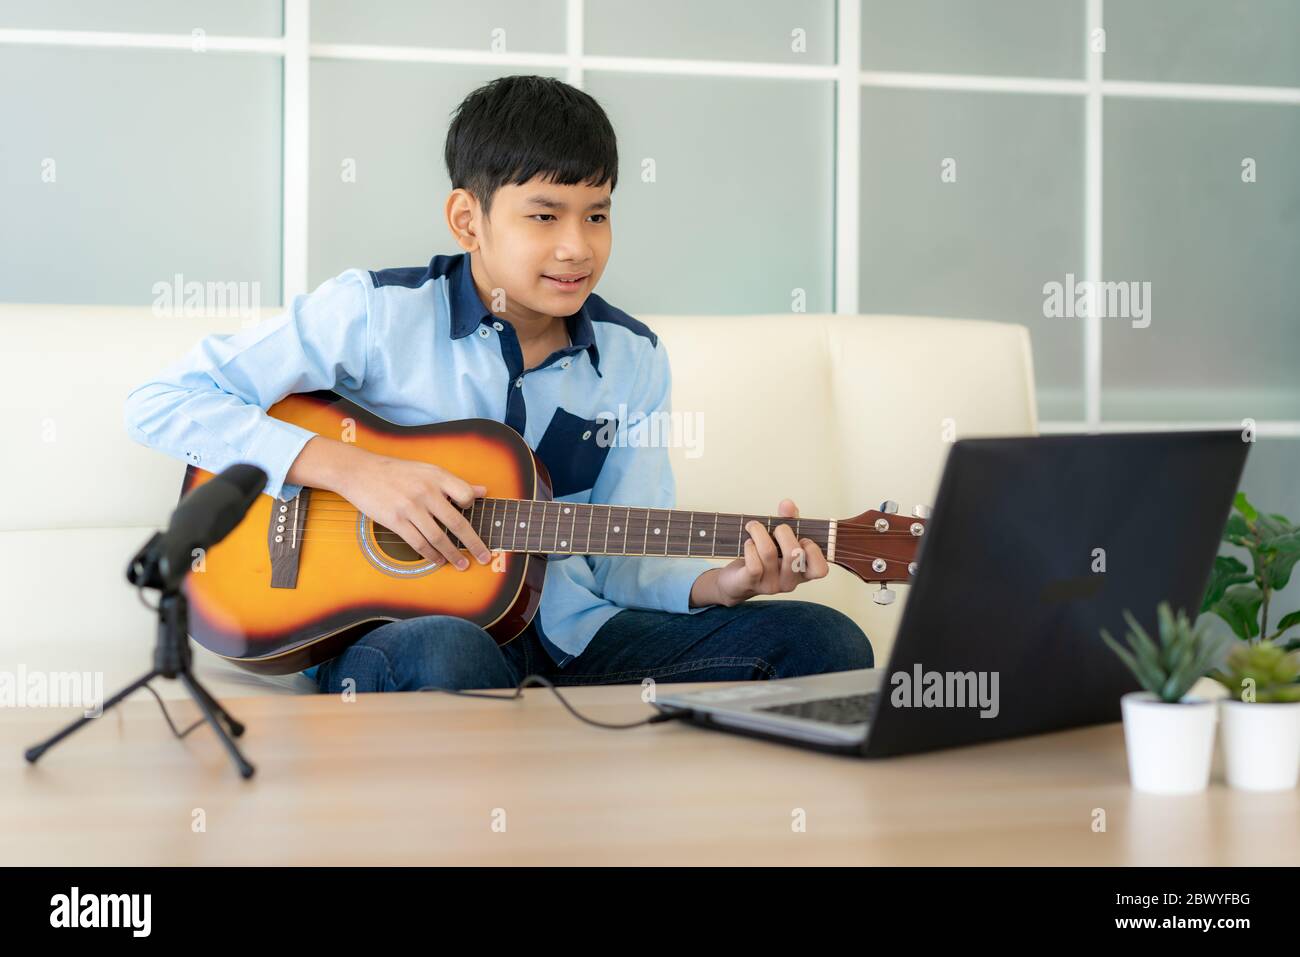 Un garçon asiatique joue de la guitare acoustique et regarde un cours en ligne sur un ordinateur portable tout en s'entraînant à la maison. Réunion virtuelle de l'happy hour pour un garçon asiatique pour jouer de la musique o Banque D'Images